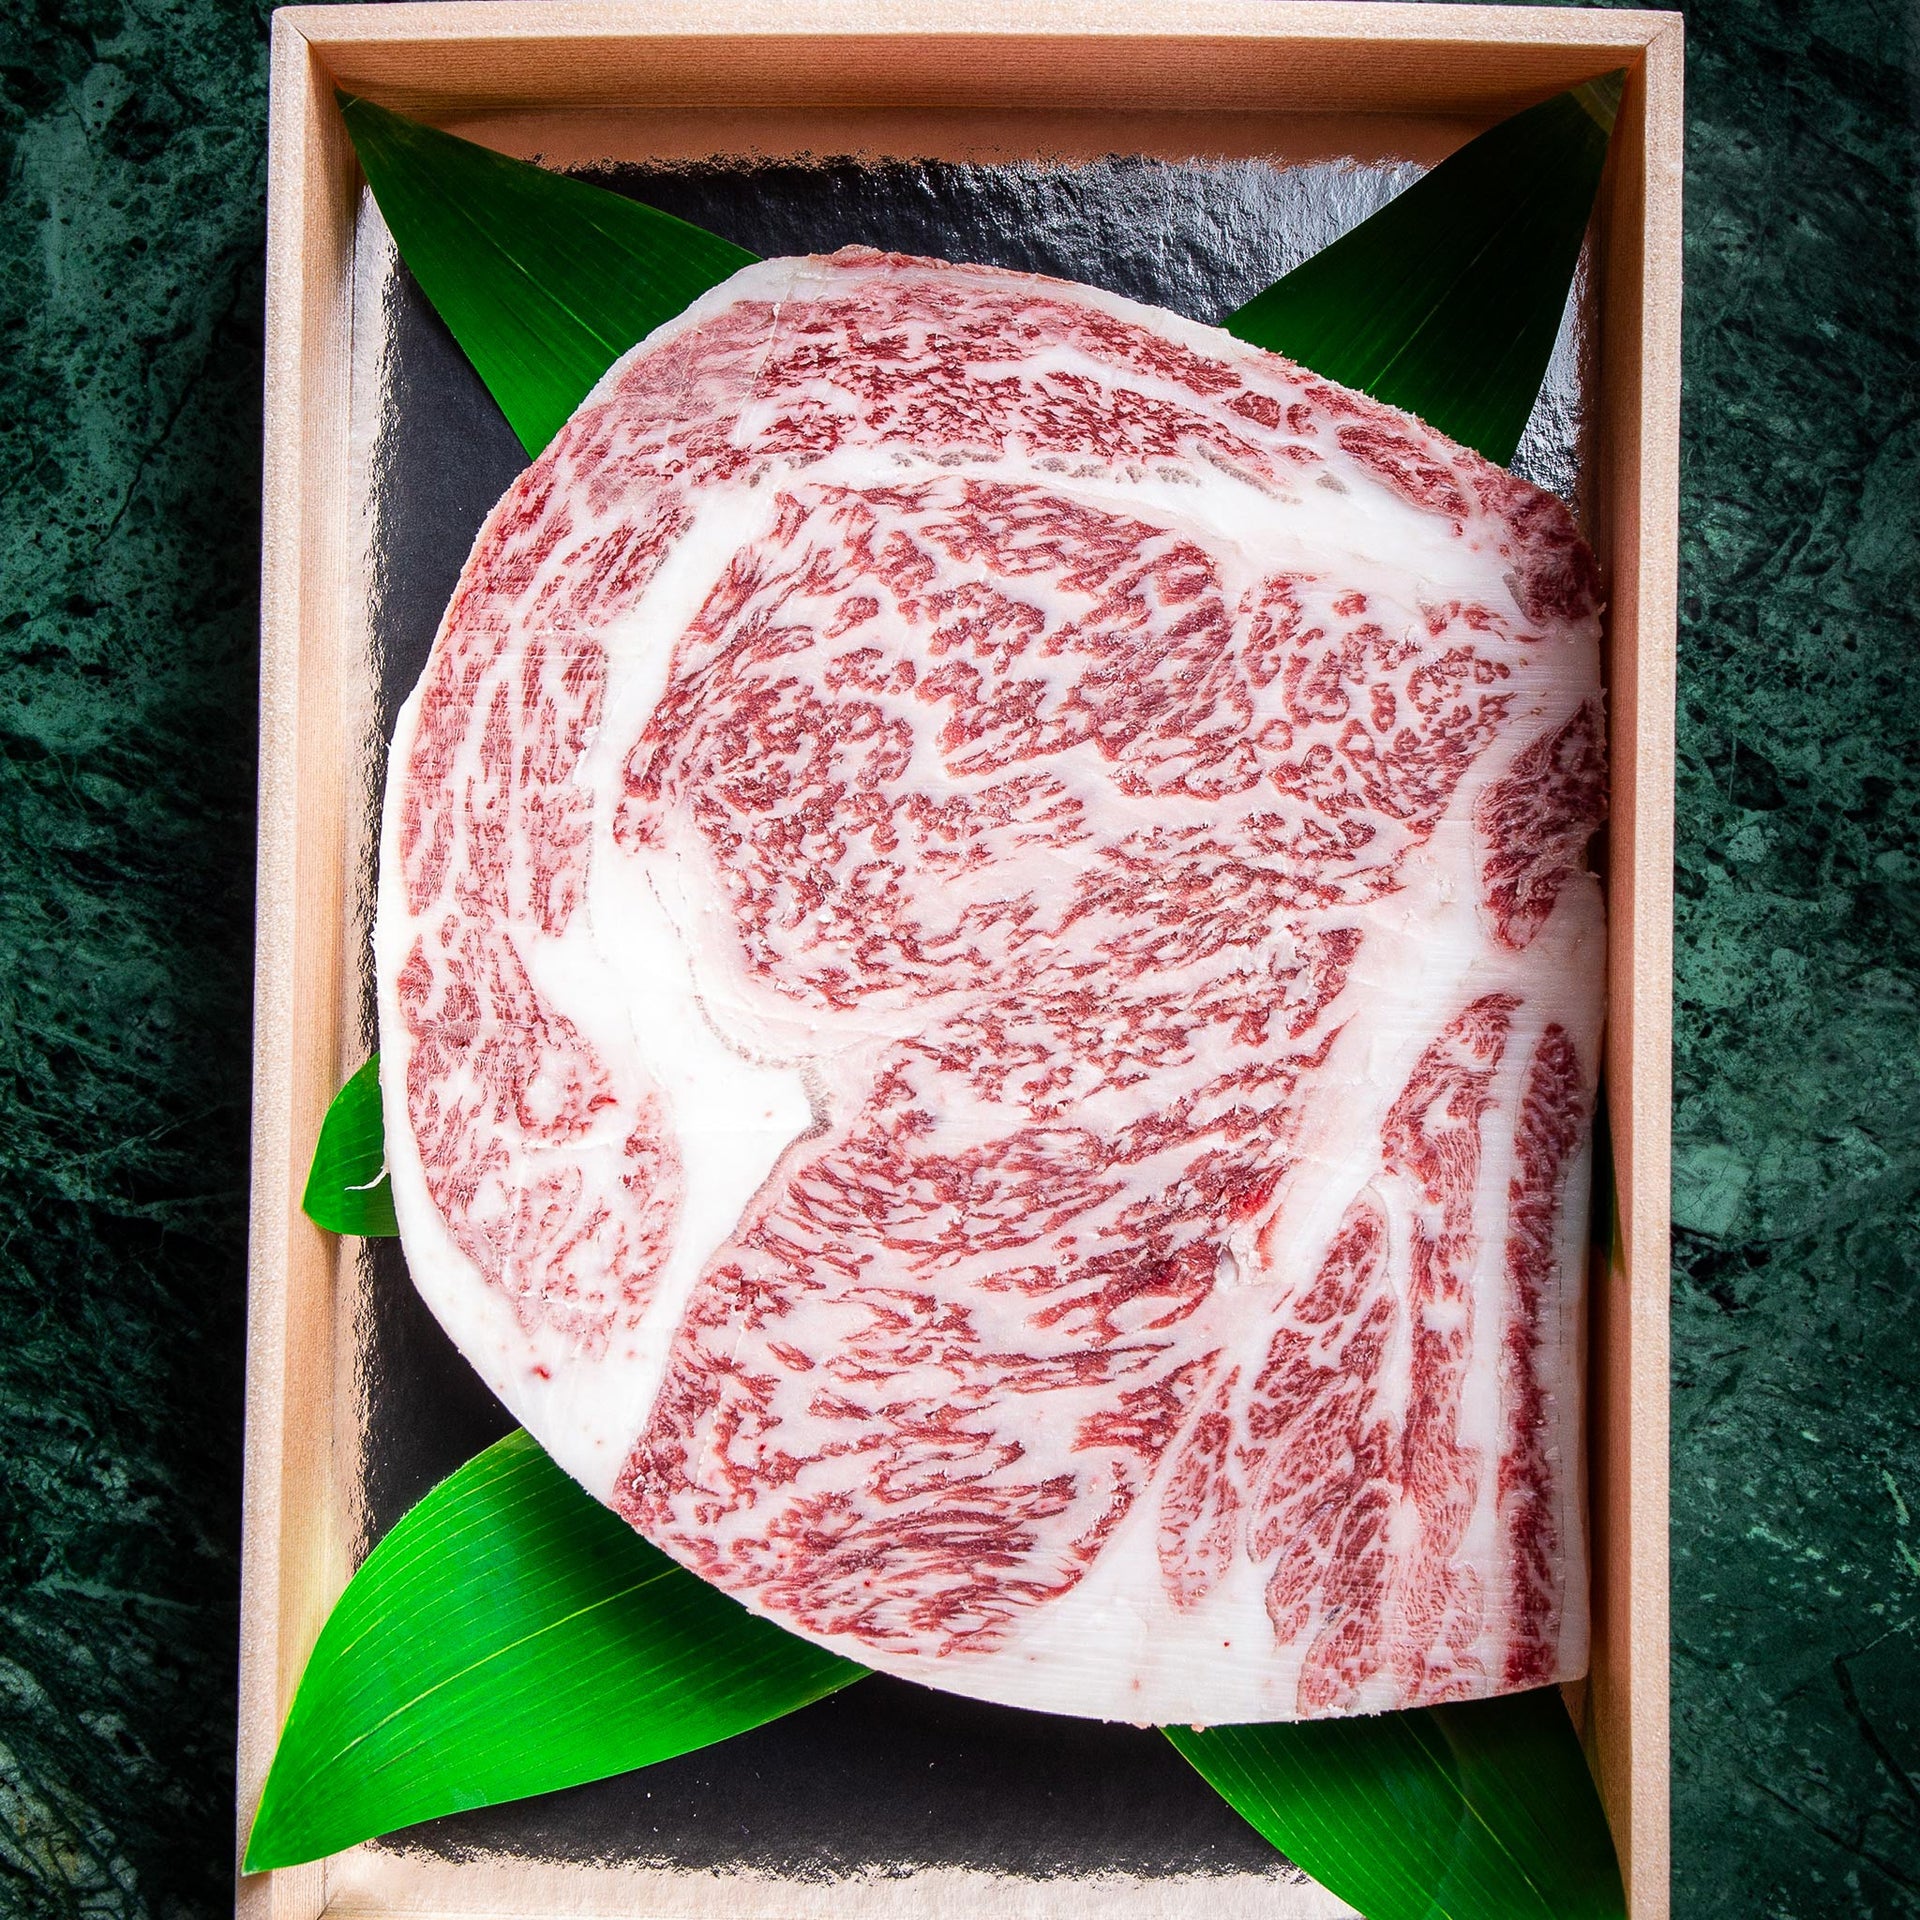 A5 Japanese Saroma Wagyu Beef Herishita / Striploin Steak